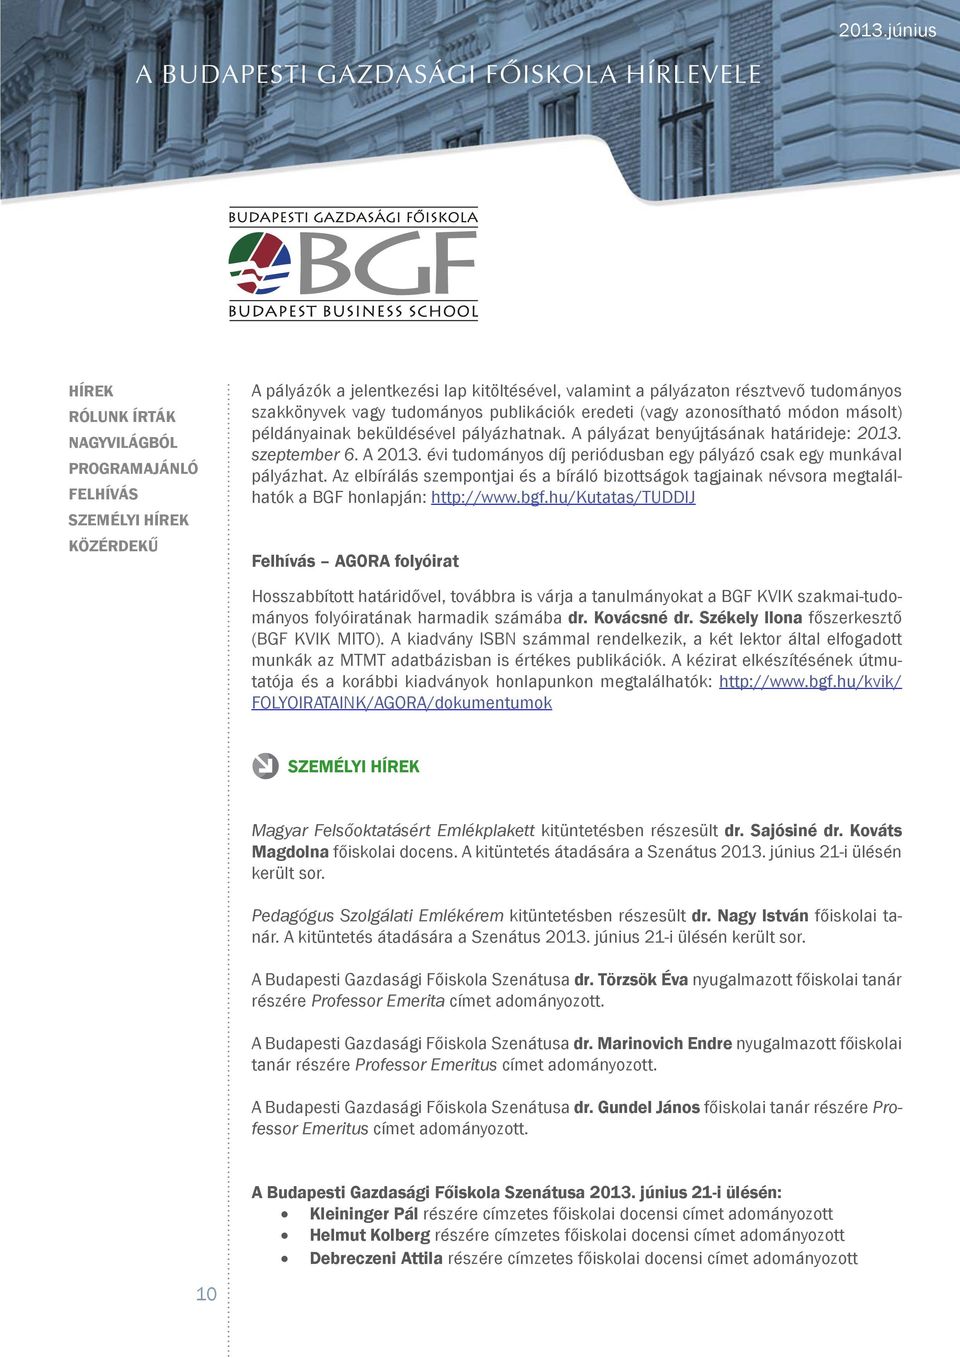 Az elbírálás szempontjai és a bíráló bizottságok tagjainak névsora megtalálhatók a BGF honlapján: http://www.bgf.